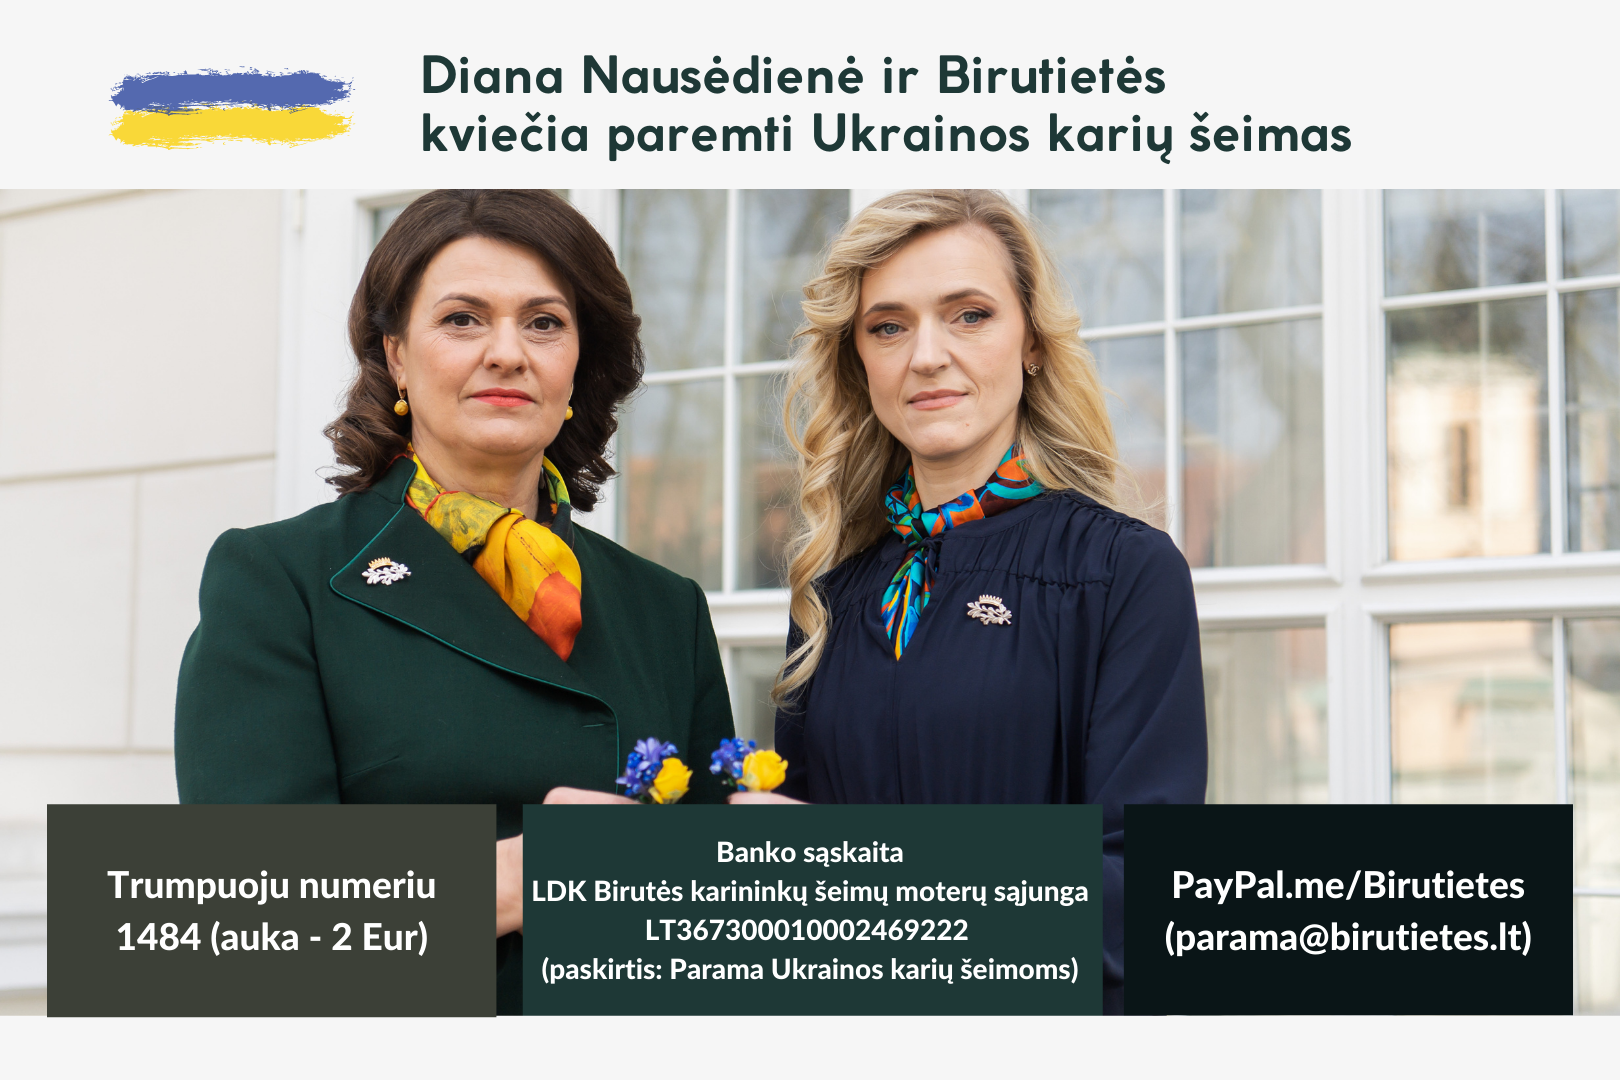 Diana Nausėdienė ir Birutietės kviečia paremti Ukrainos karių šeimas: jos dabar pažeidžiamiausios